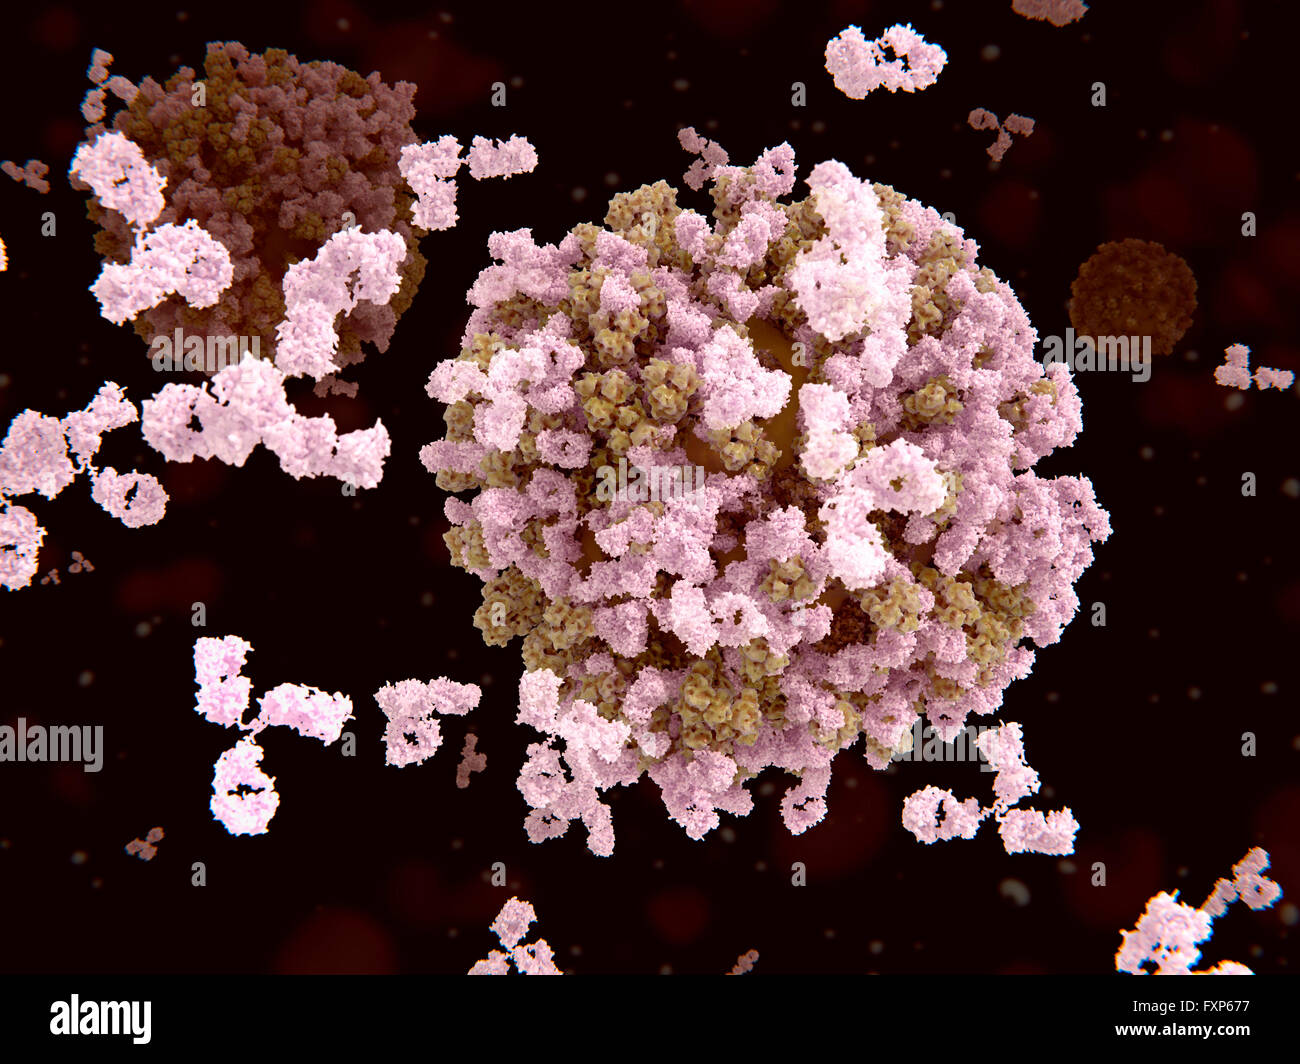 Antikörper und Grippe-Viren. Illustration der Antikörper (rosa) Angriff auf Influenza-Virus-Partikel (braun). Die Antikörper binden an das Hämagglutinin-Protein, das die Antigene Website des Virus enthält. Diese Bindung durch die Antikörper verhindert, dass die Viruspartikel Bindung an die Oberfläche der menschlichen Zellen. Die Grippe ist in der Orthomyxovirus-Gruppe der Viren. Es infiziert die Atemwege und verursacht Fieber, Muskelschmerzen, Halsschmerzen und Gefühle von Müdigkeit. Neue Stämme des Virus rasant entwickeln, und können verursachen Epidemien. Stockfoto